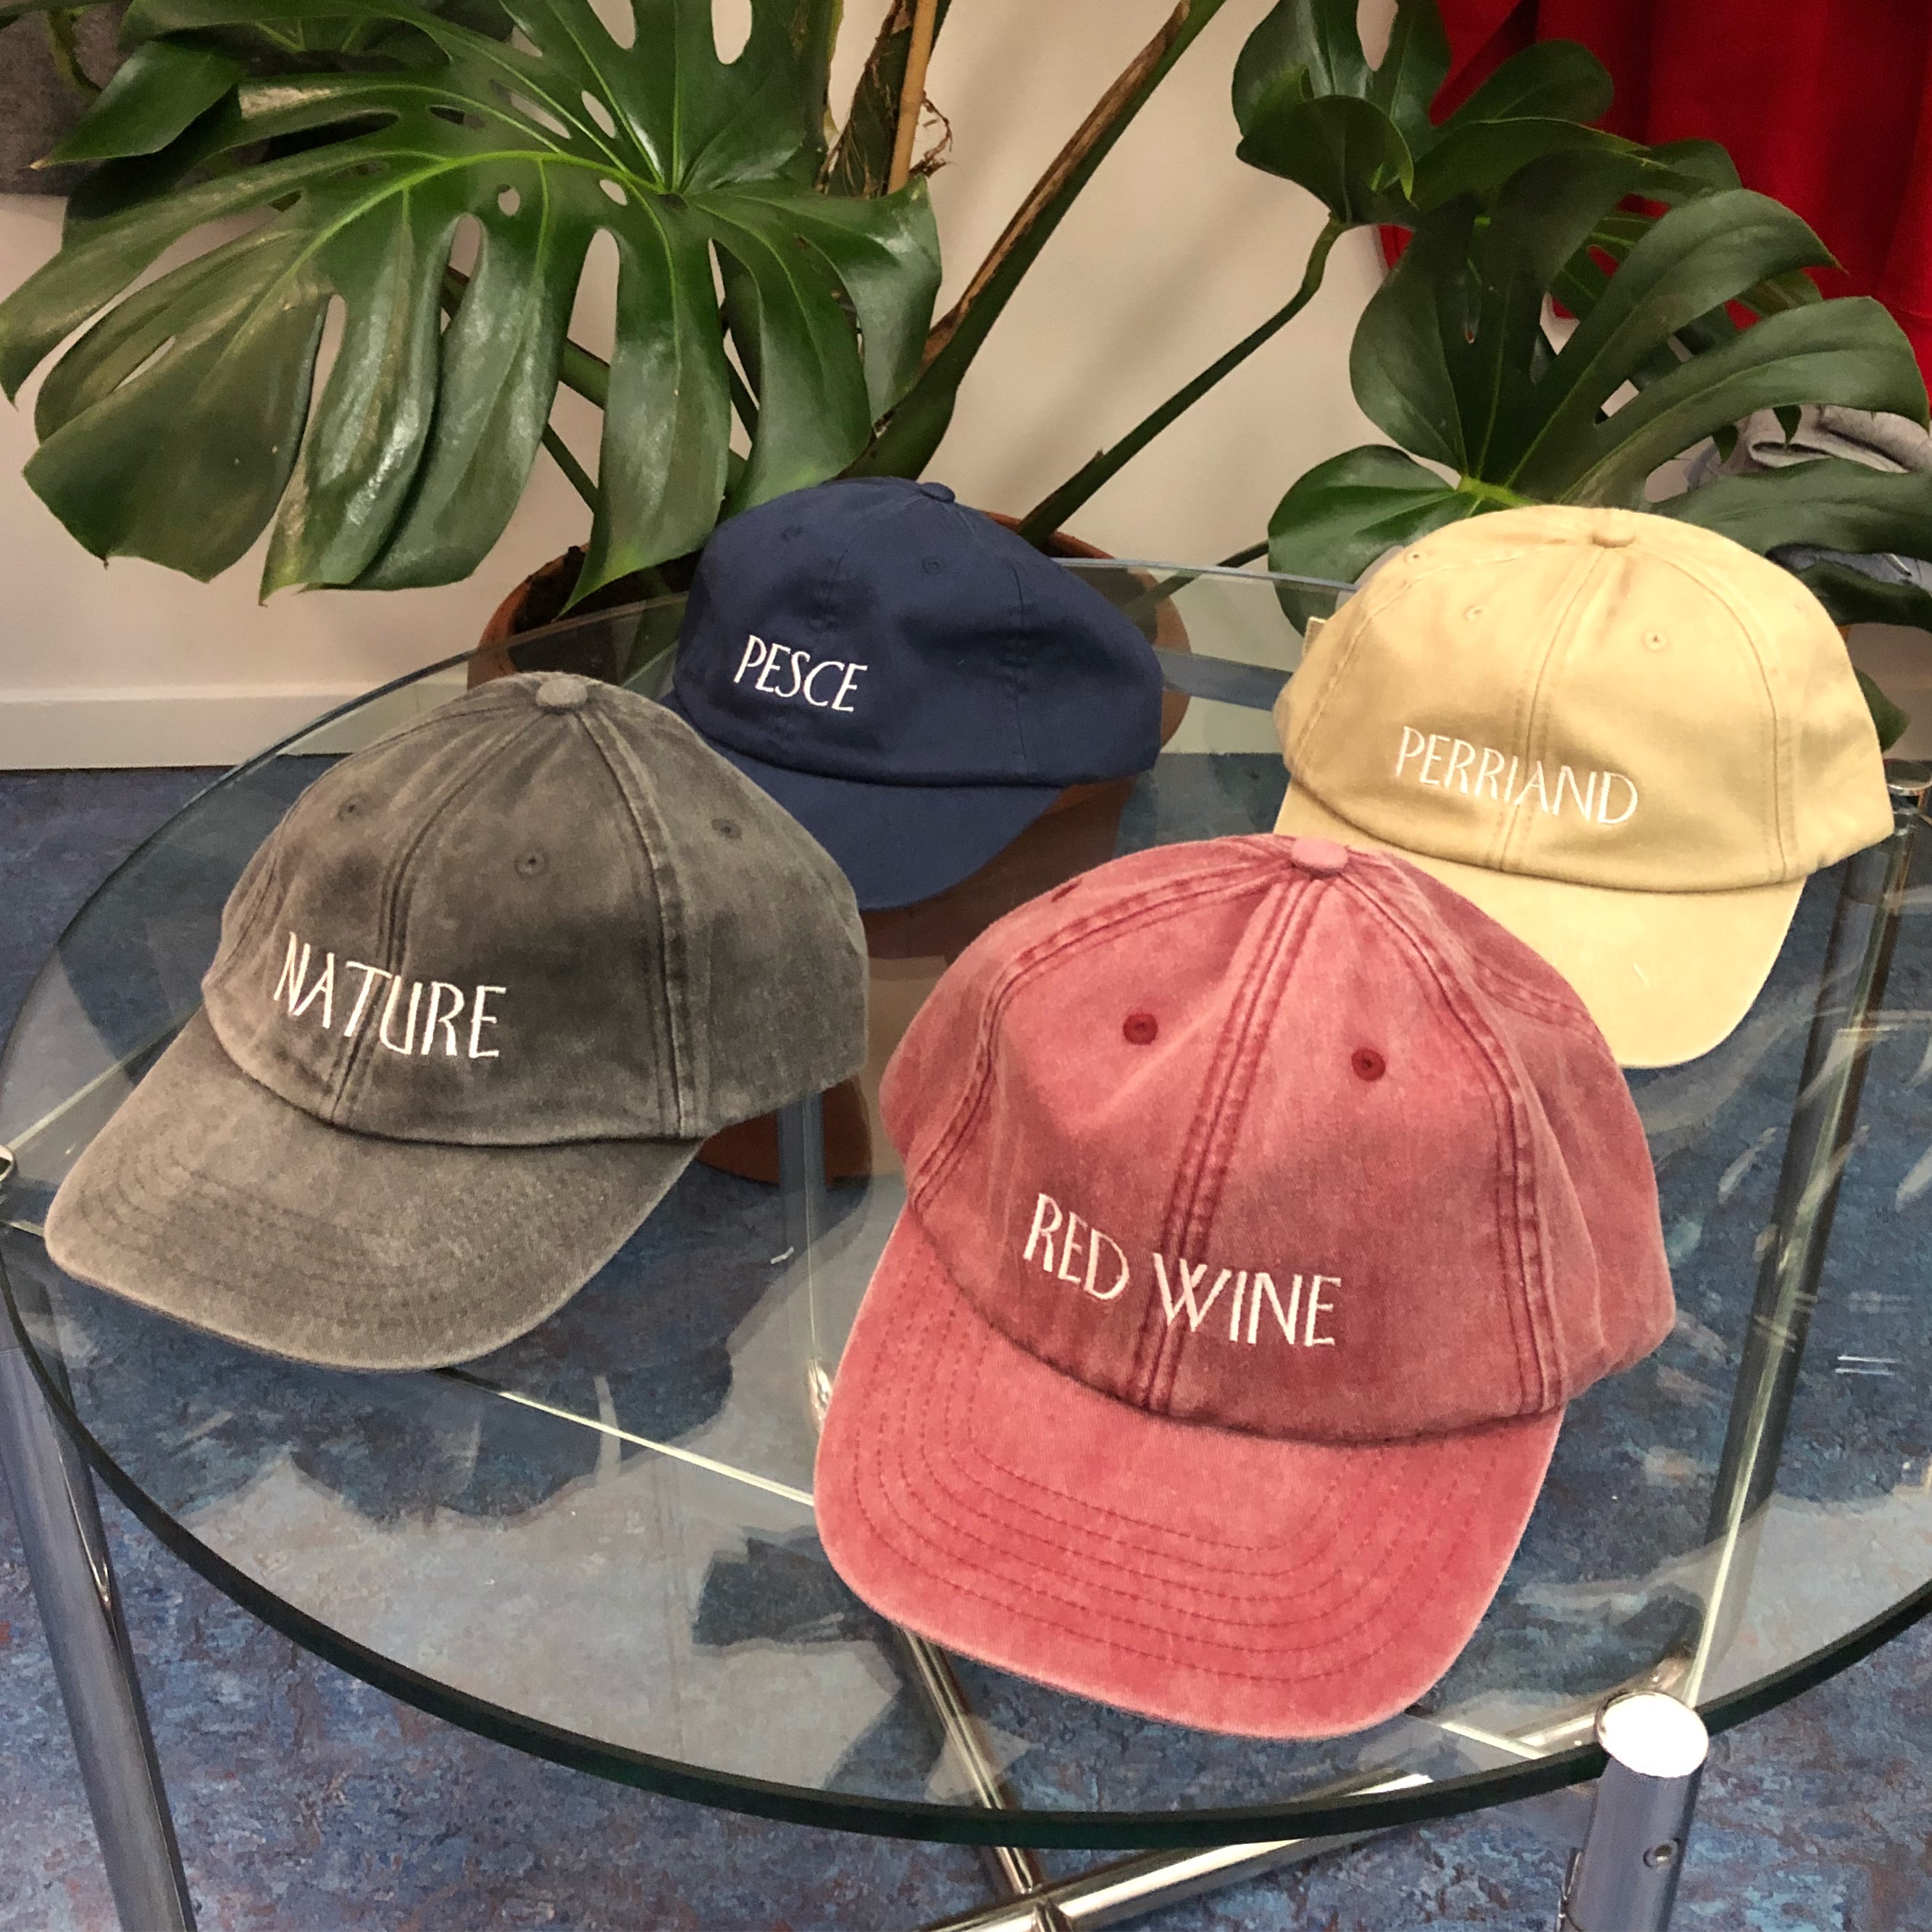 Tribute hats